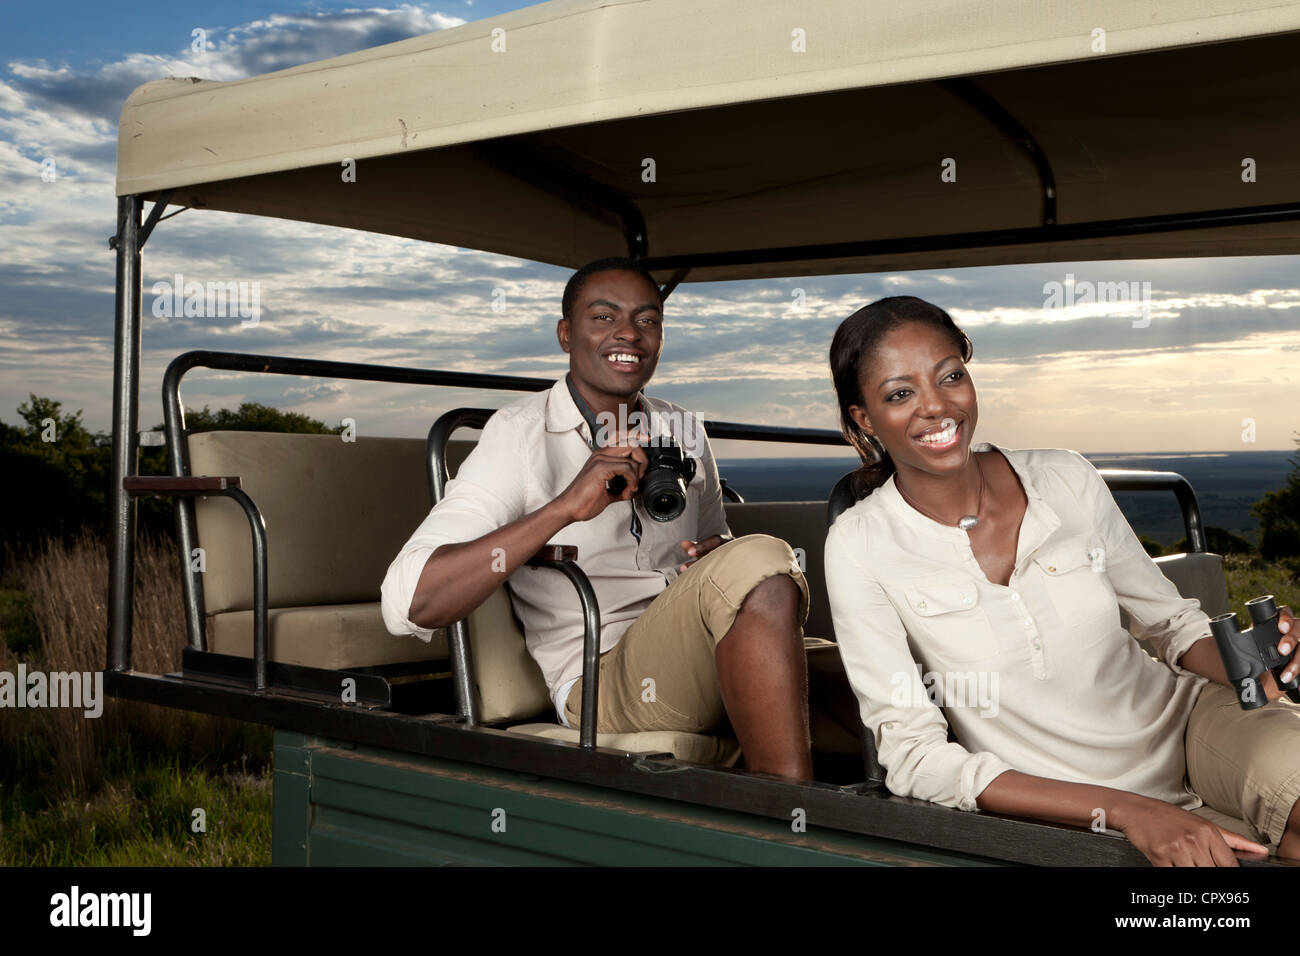 Una pareja africana sentados en un juego de visualización vehículo buscando animales Foto de stock